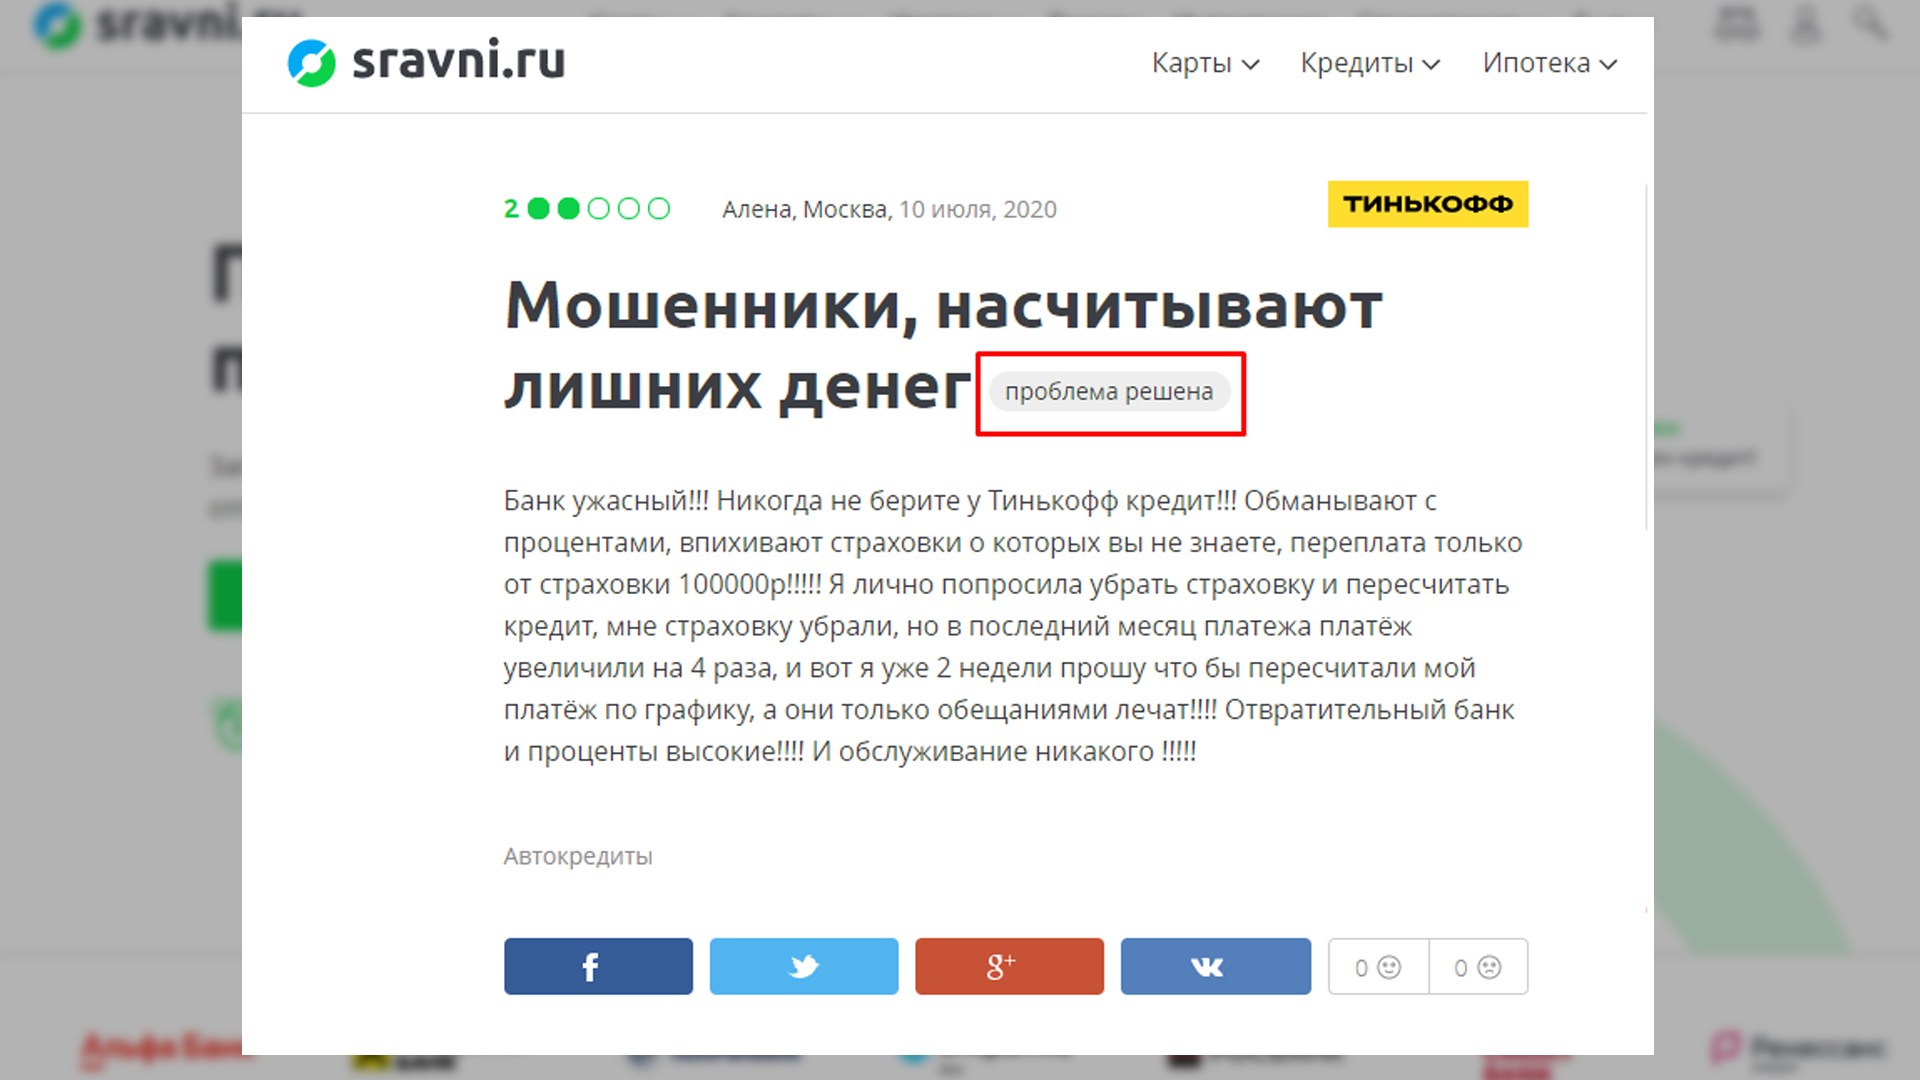 Пример отработанной жалобы на Сравни.ру в ветке банка Тинькофф. 